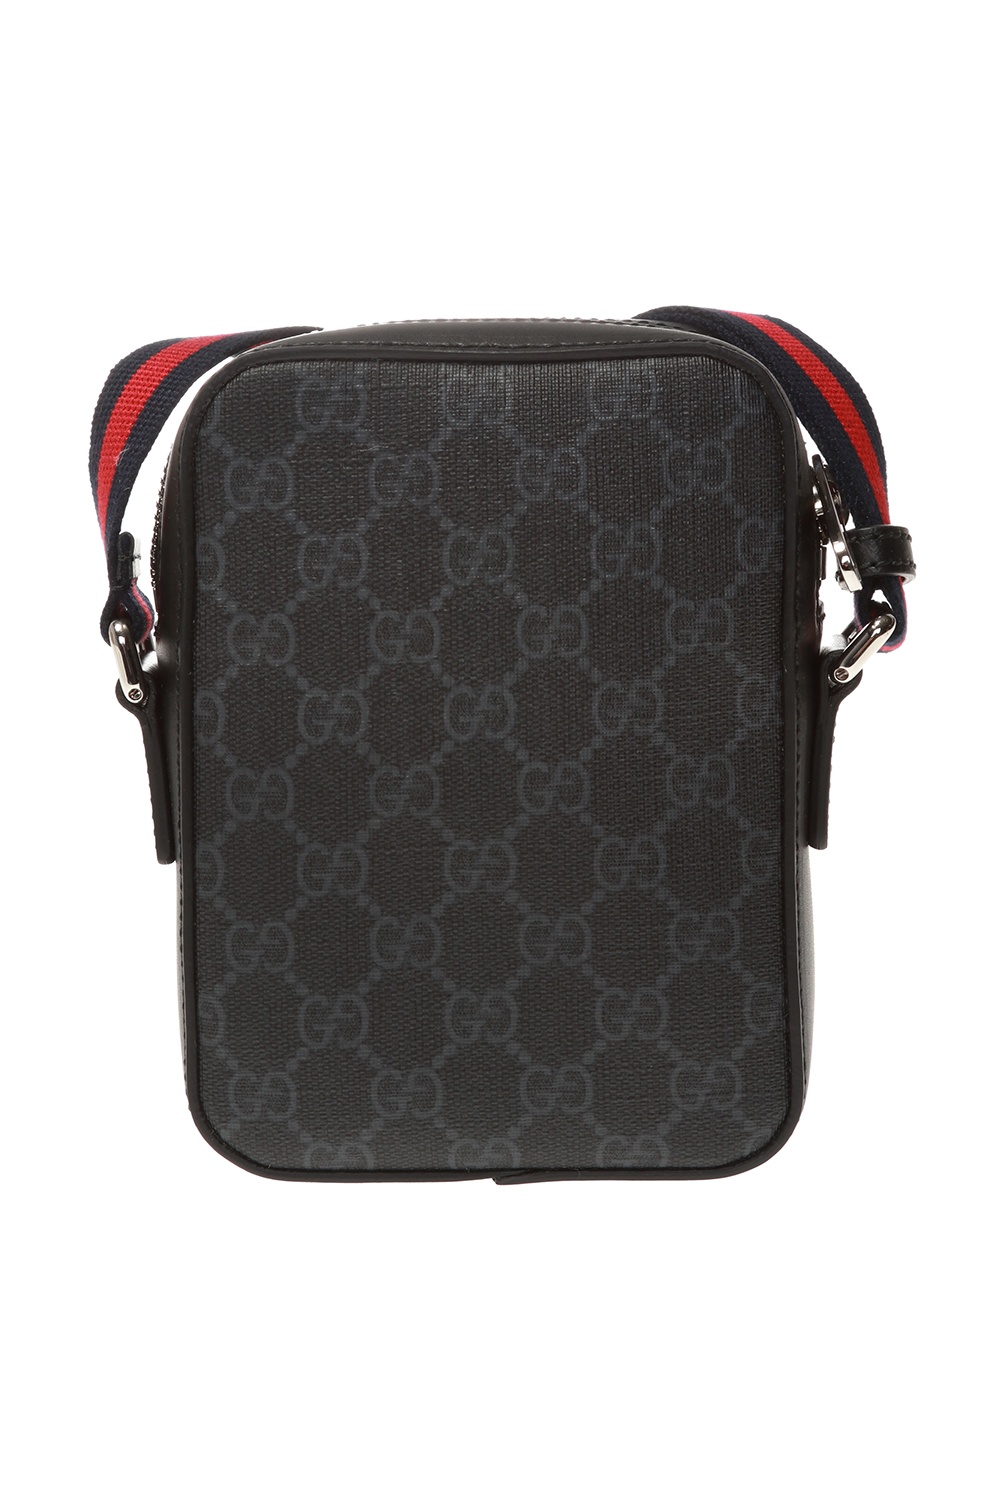 Gucci Branded shoulder bag